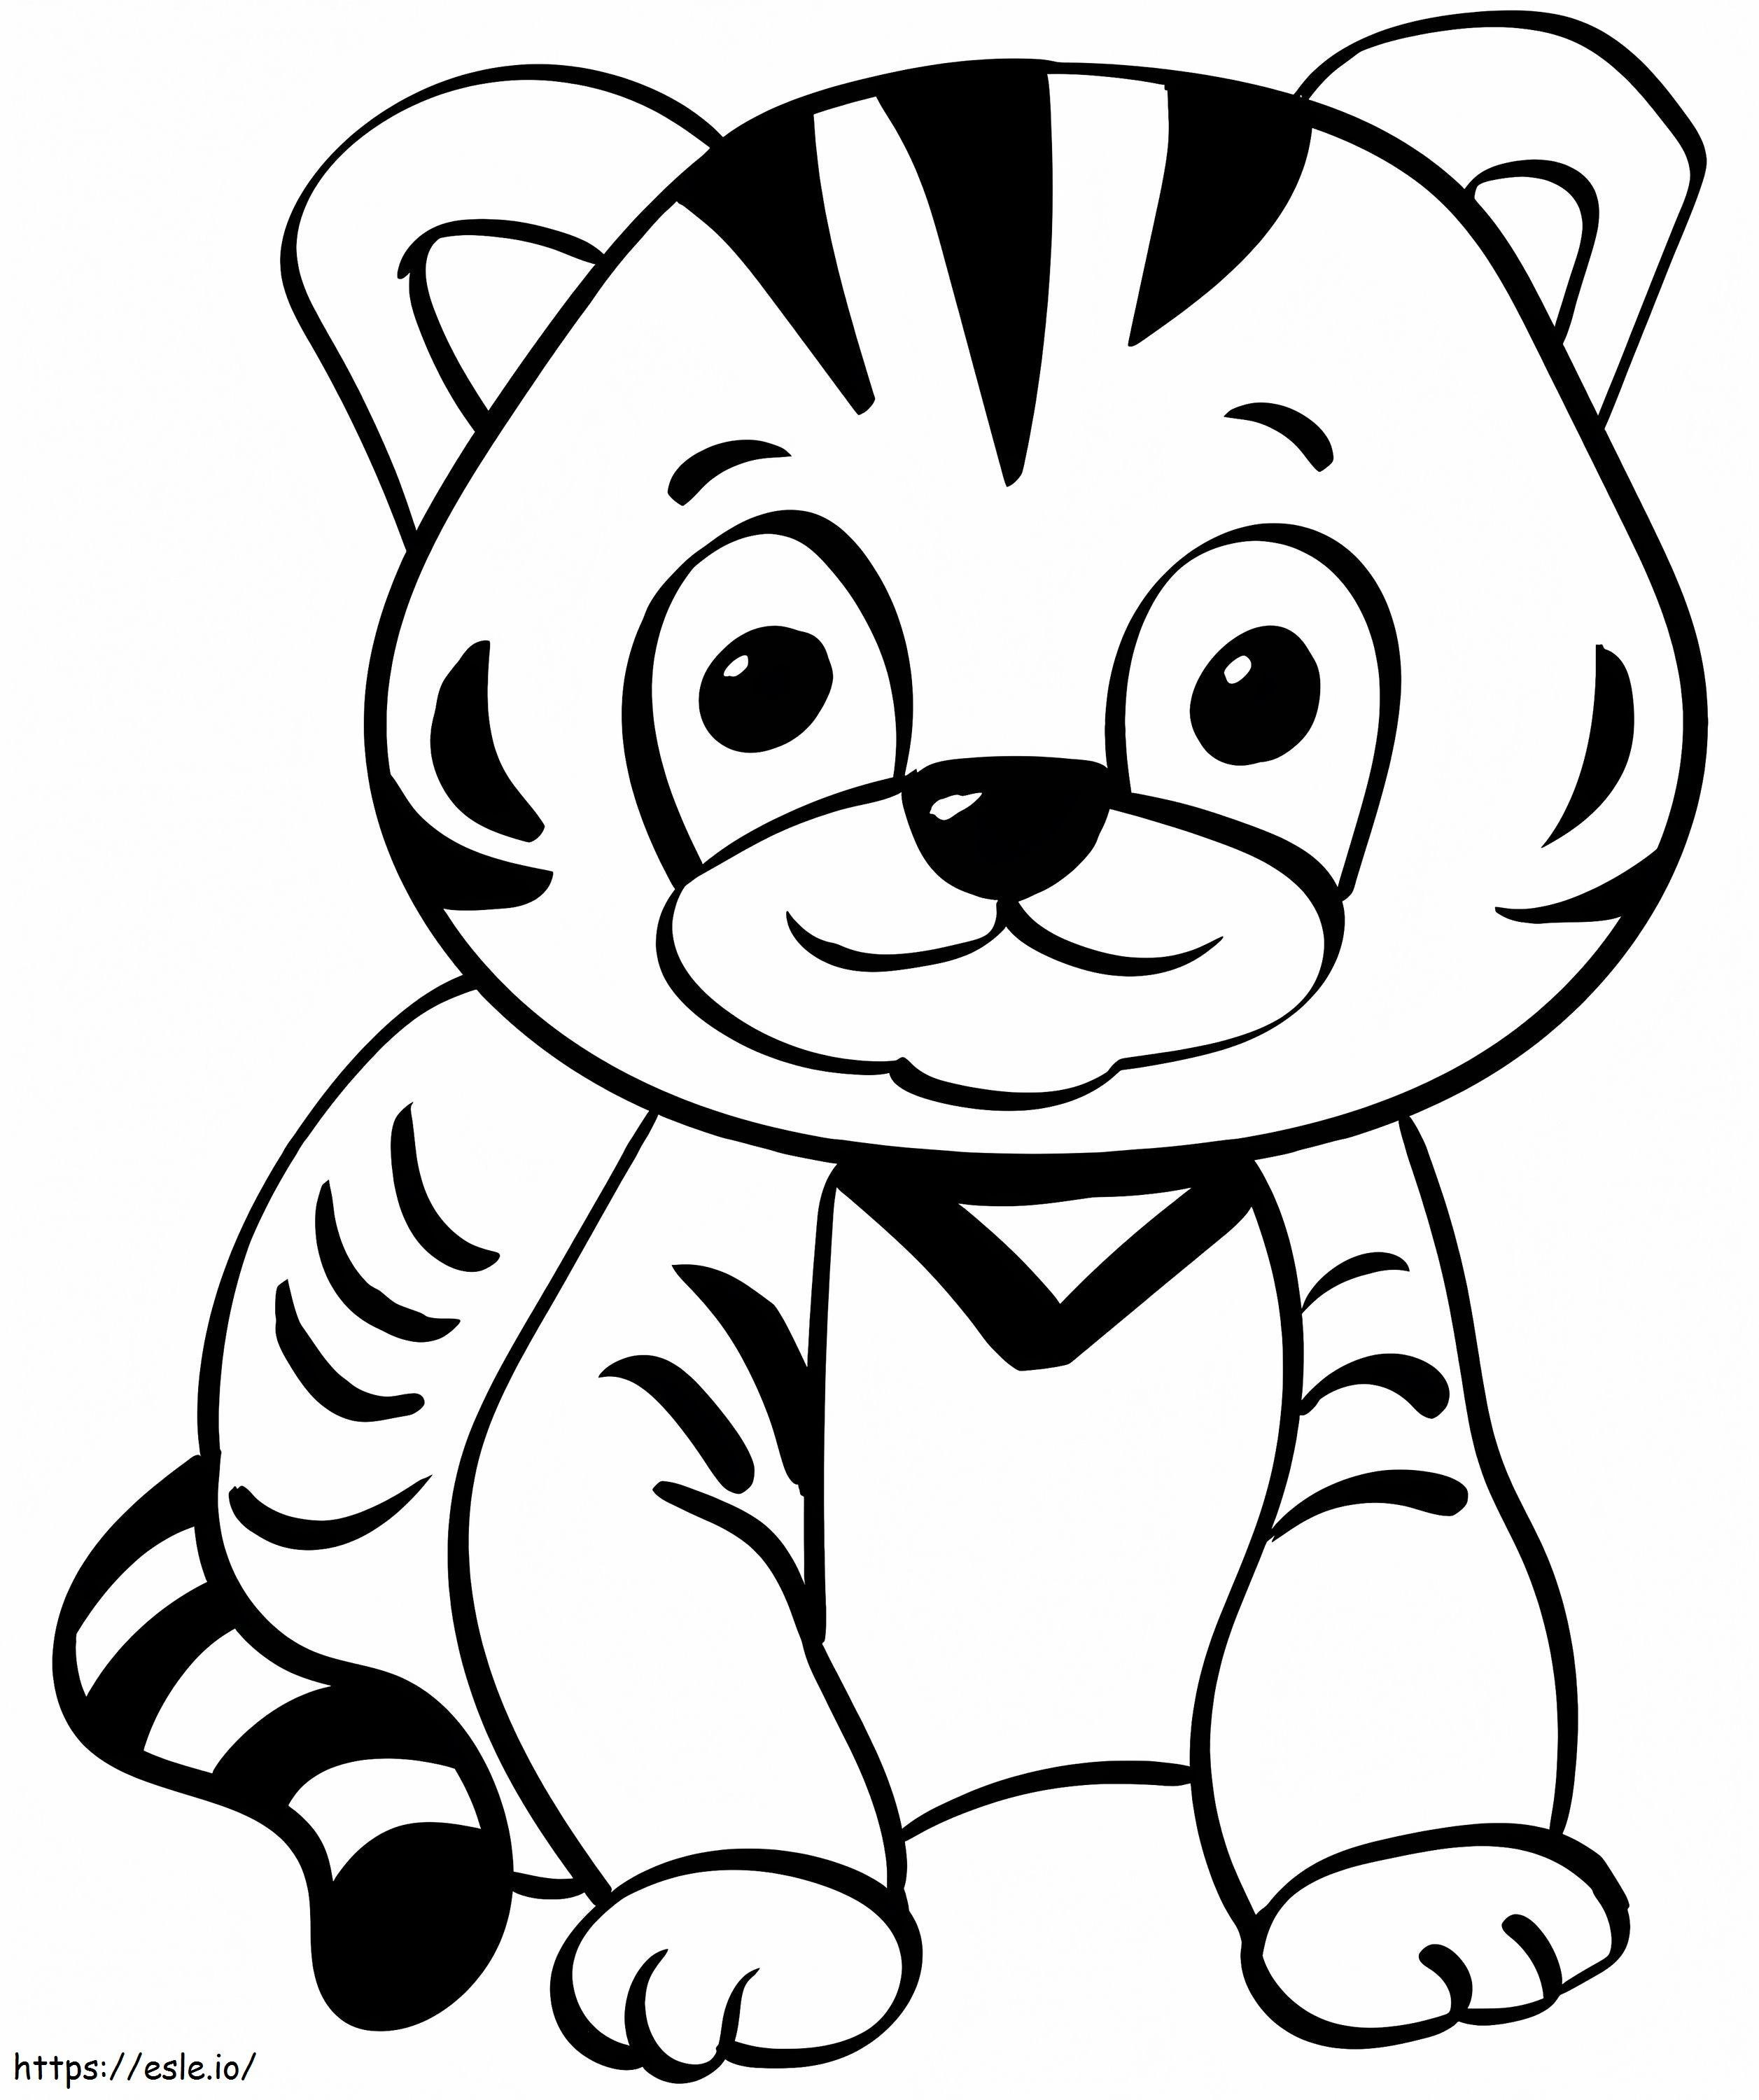 Tiger Cub coloring page